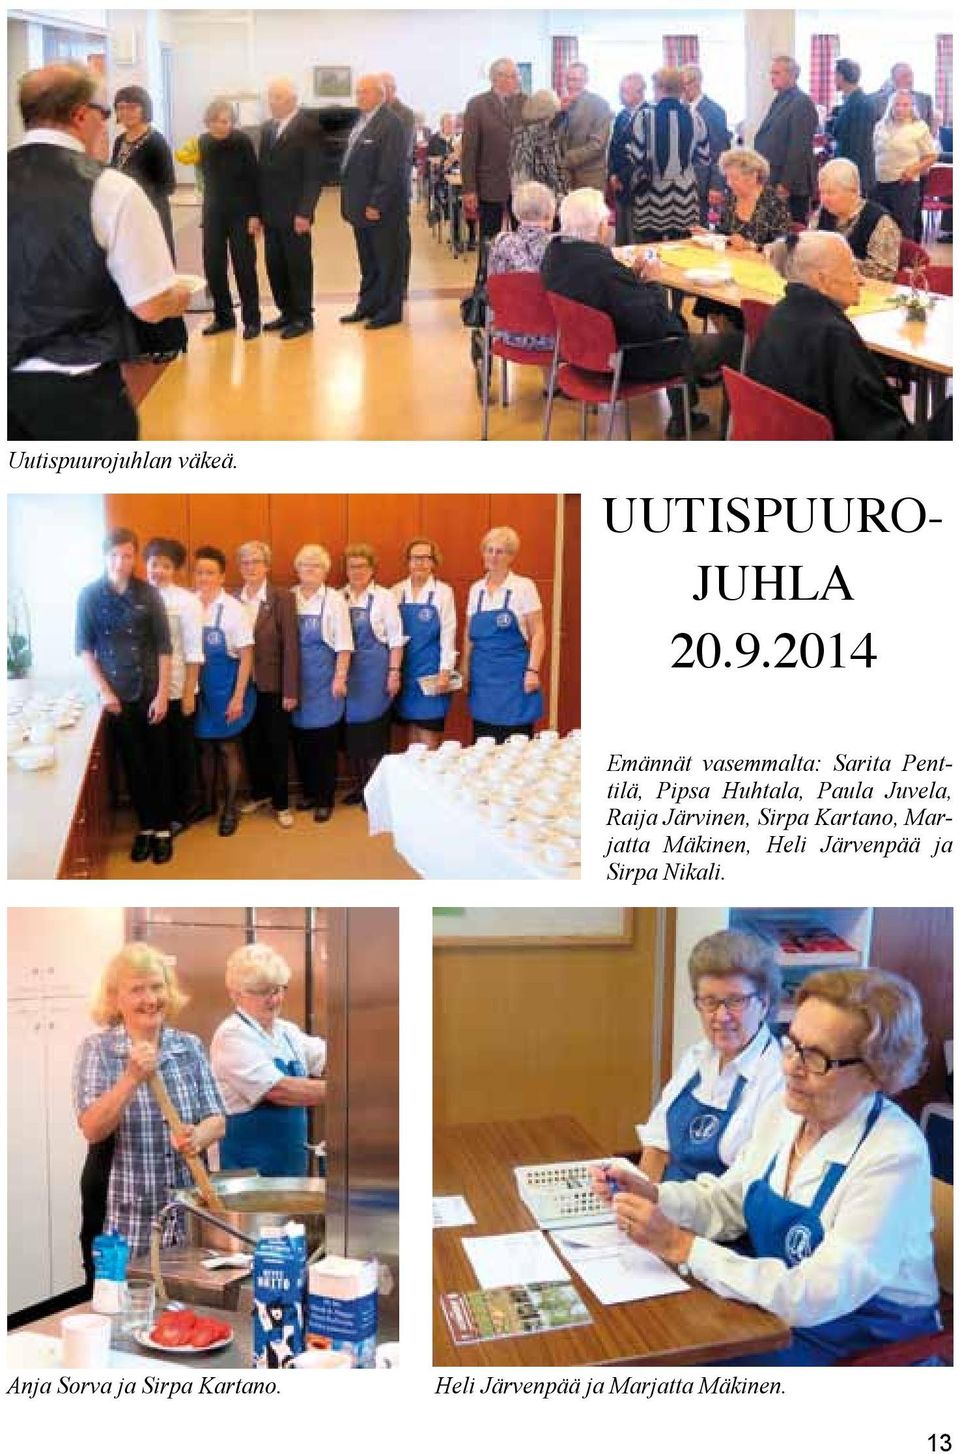 Juvela, Raija Järvinen, Sirpa Kartano, Marjatta Mäkinen, Heli